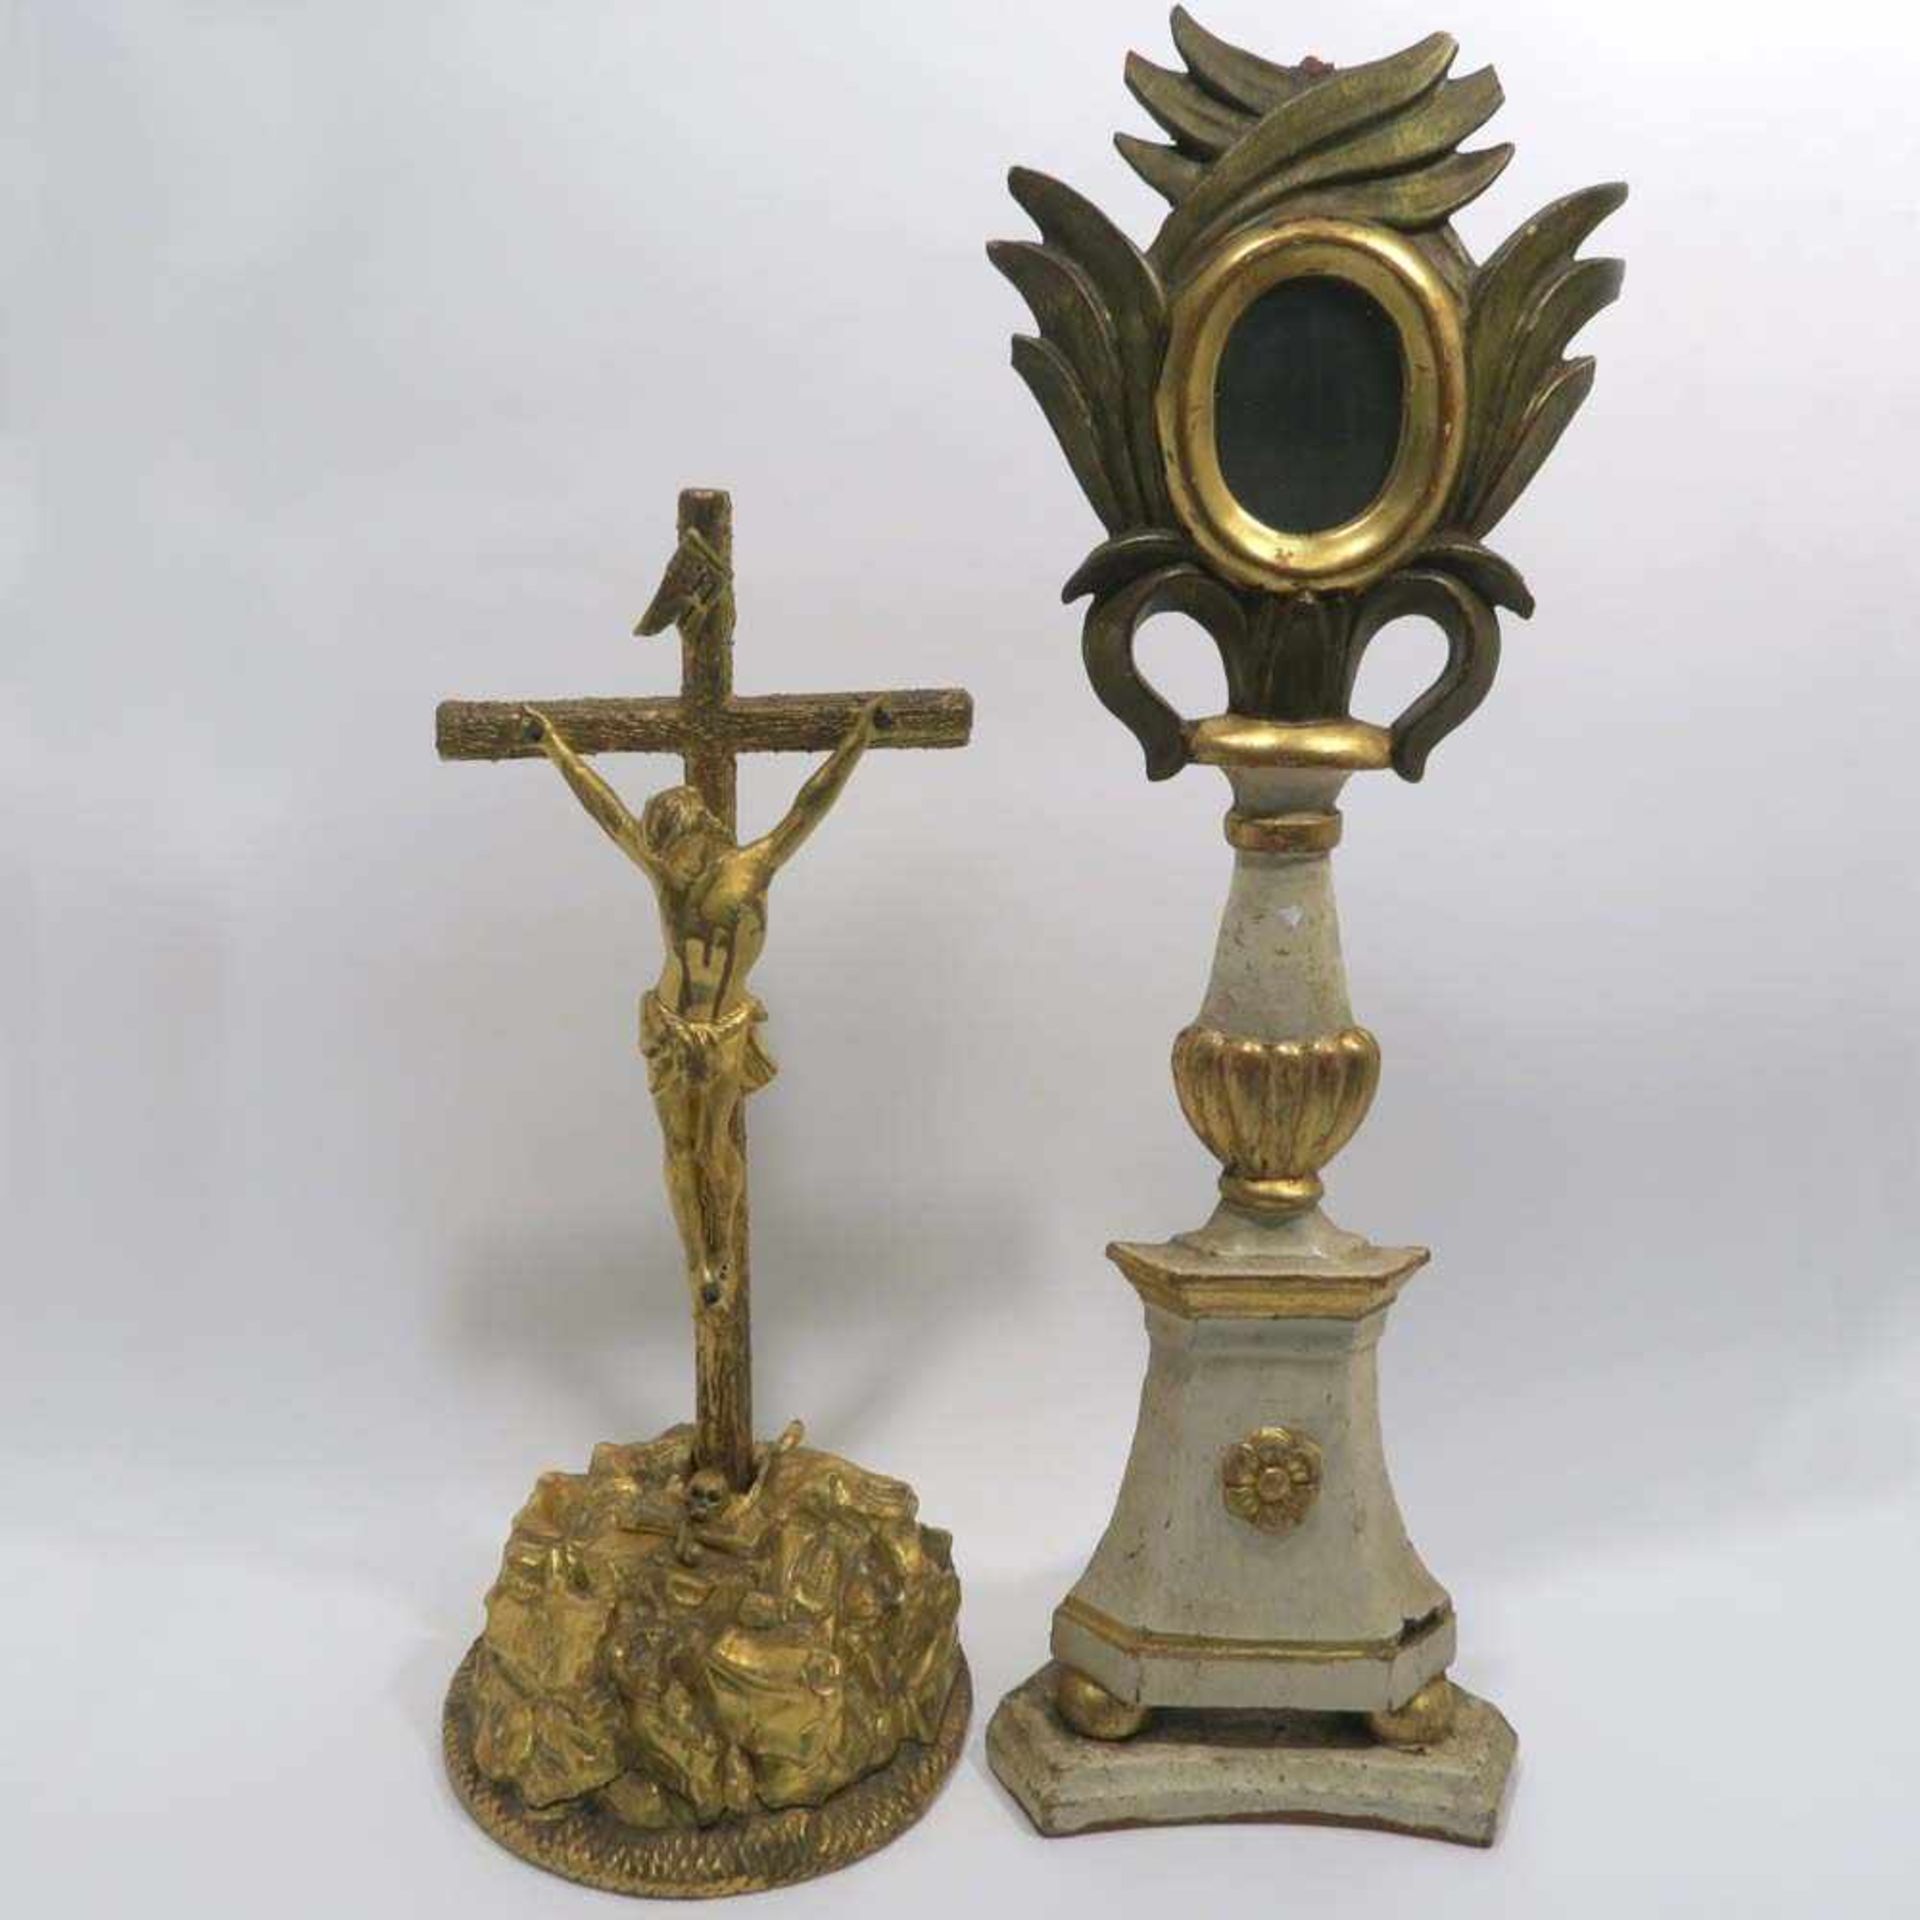 Kruzifix und AltardekorationTlw. Holz, geschnitzt, tlw. Masse, goldfarben bzw. weiß und grün